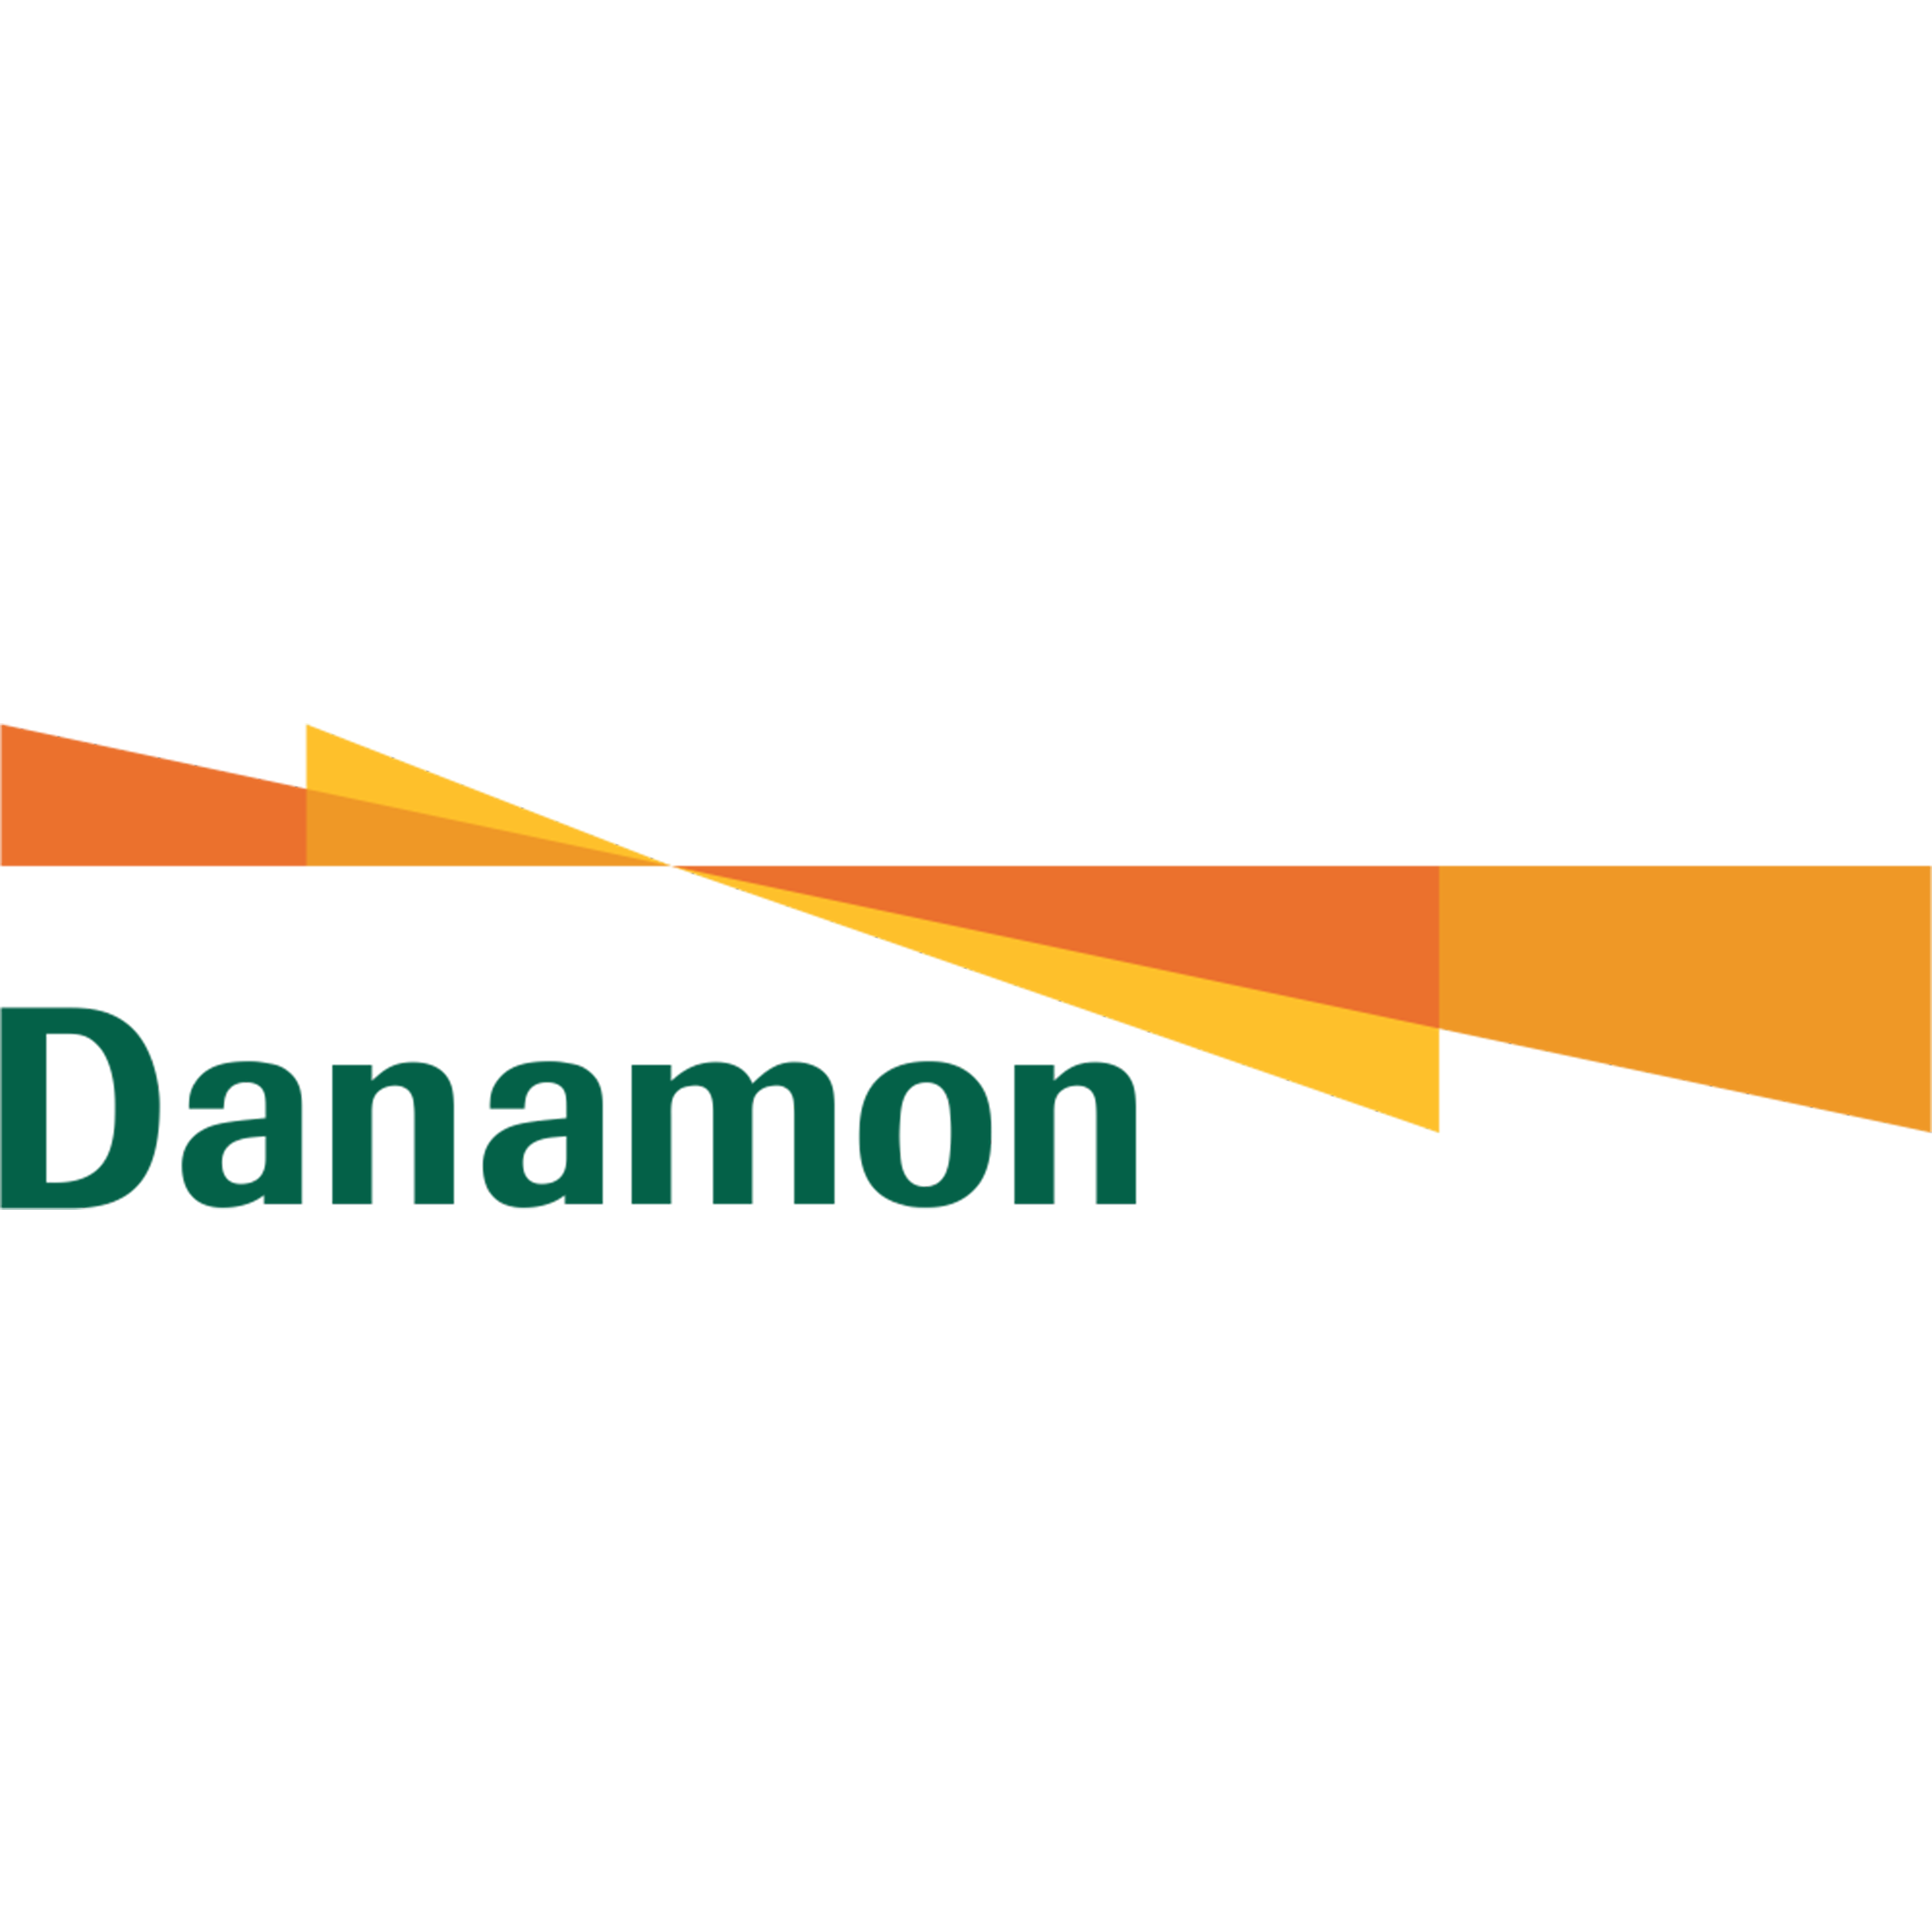 Bank Danamon